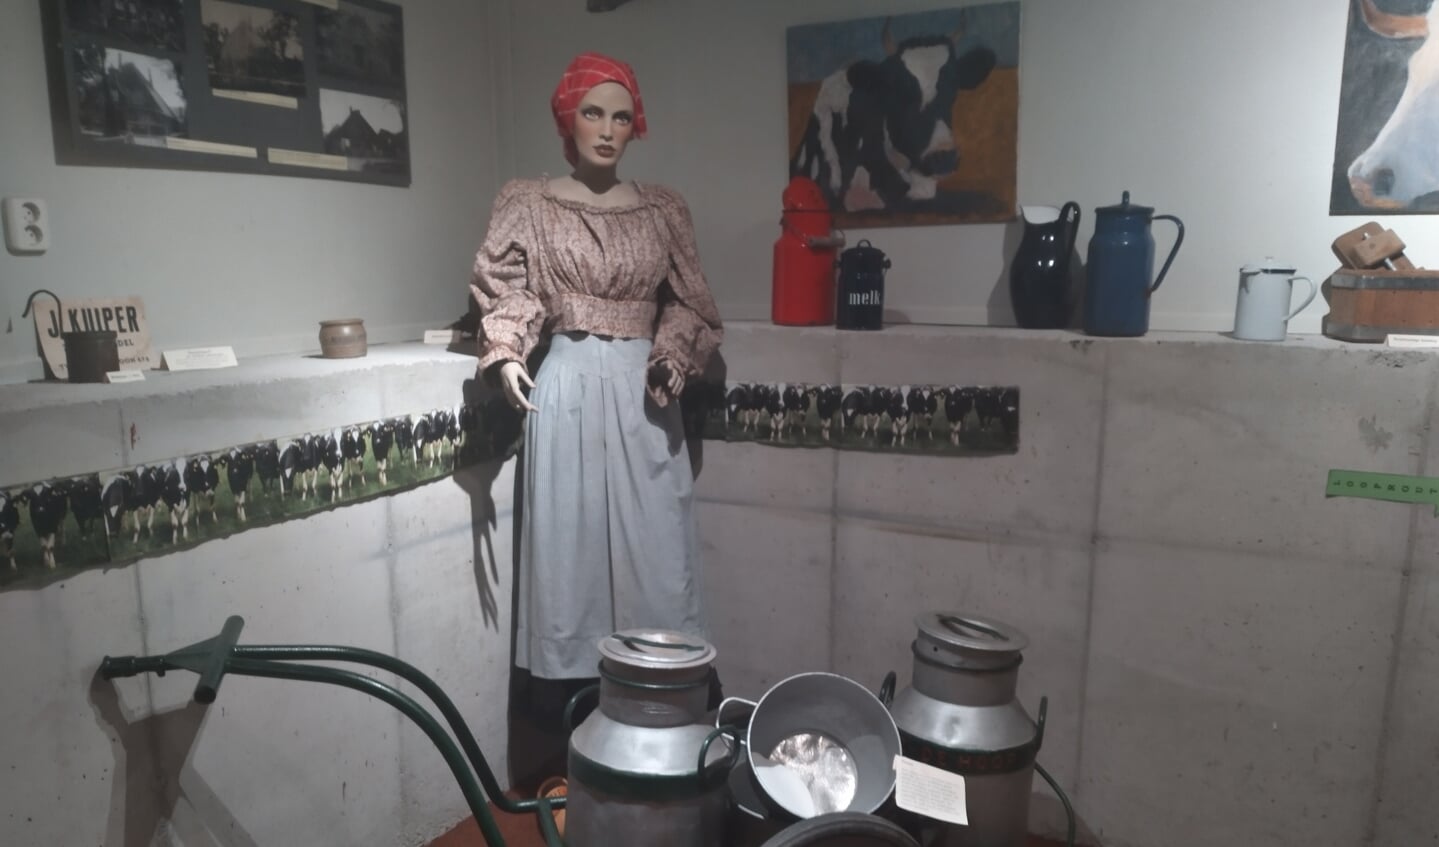 In Museum Twisca is de tentoonstelling 'Boter, kaas en boeren' te zien, met onder andere voorwerpen waarmee men vroeger kaas en boter maakte. 